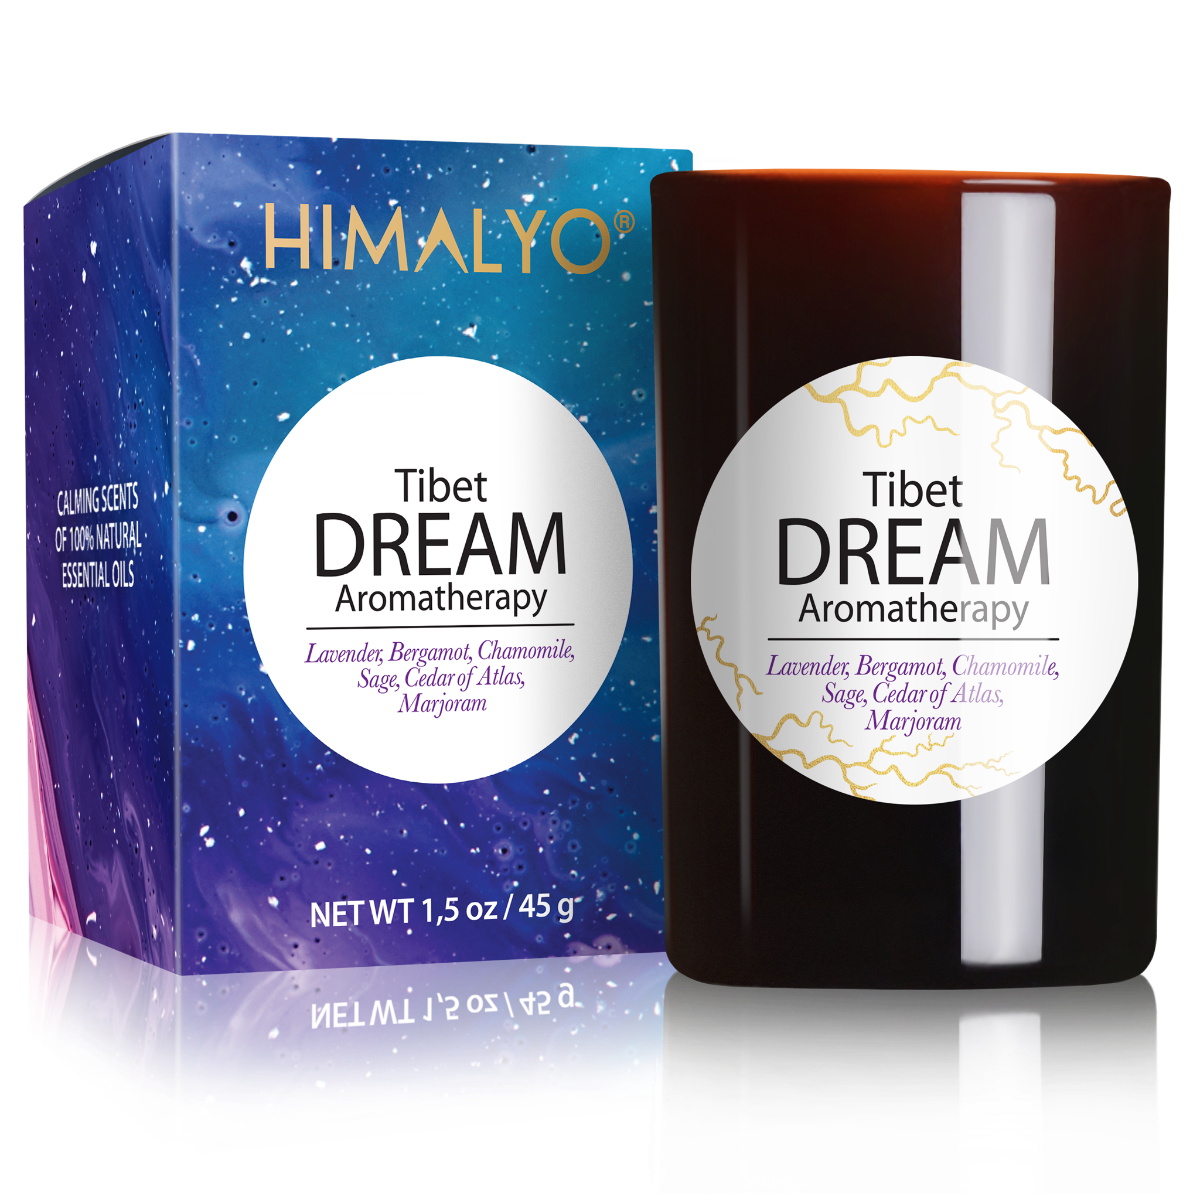 Himalyo Tibet Dream Aromatherapy Svíčka 45 g Himalyo